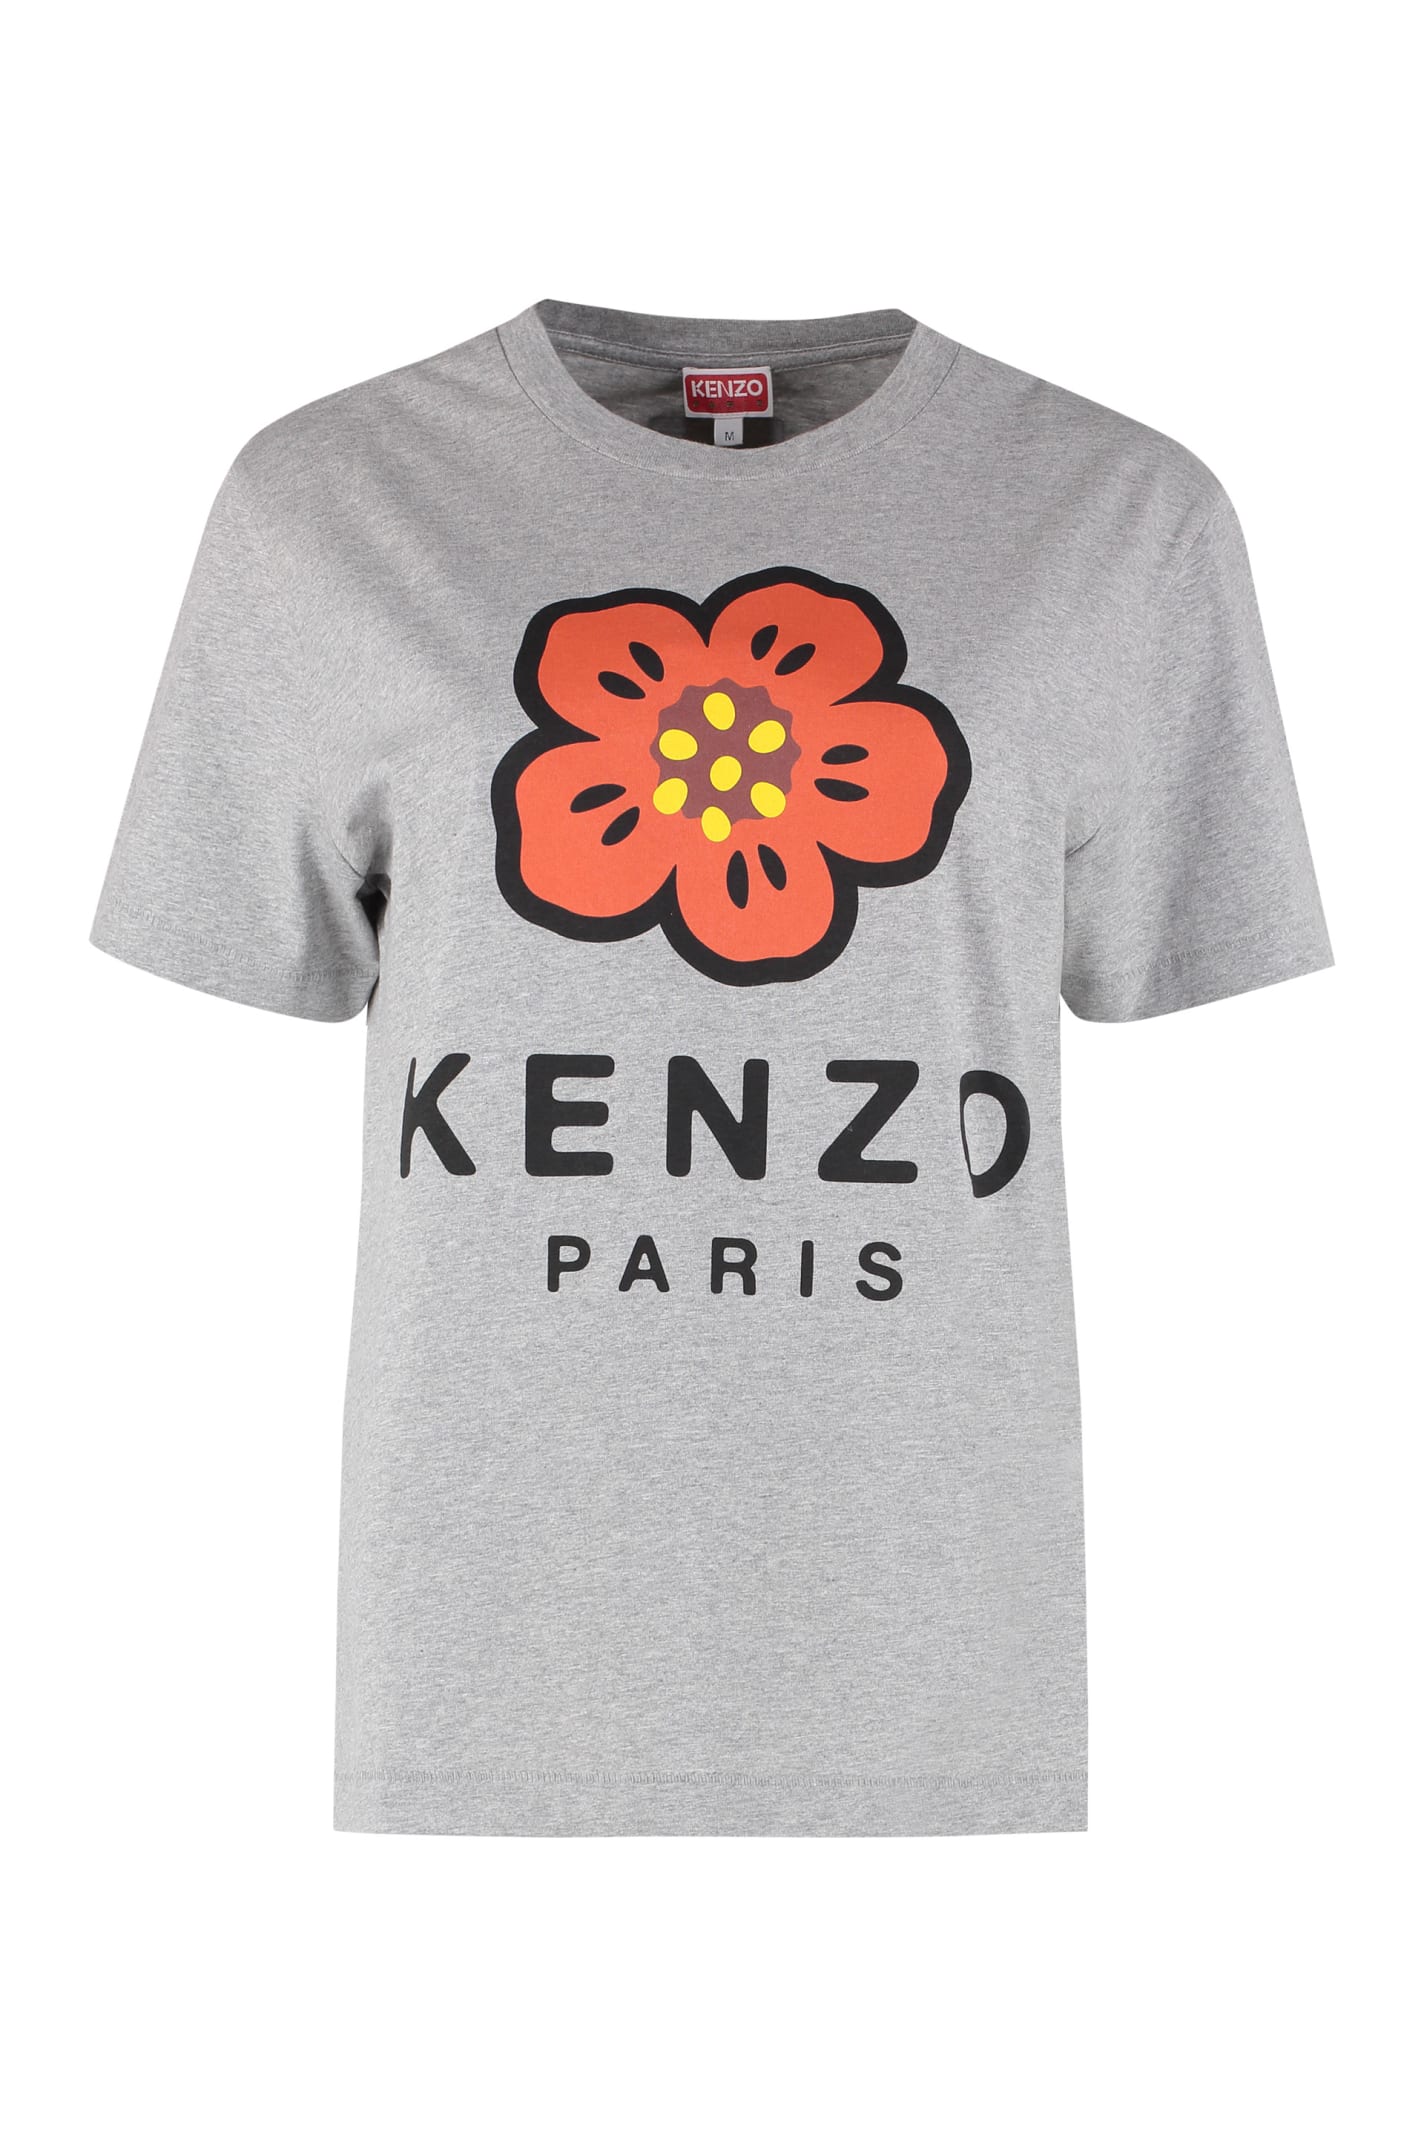 Kenzo Boke Flower Printed T-shirt